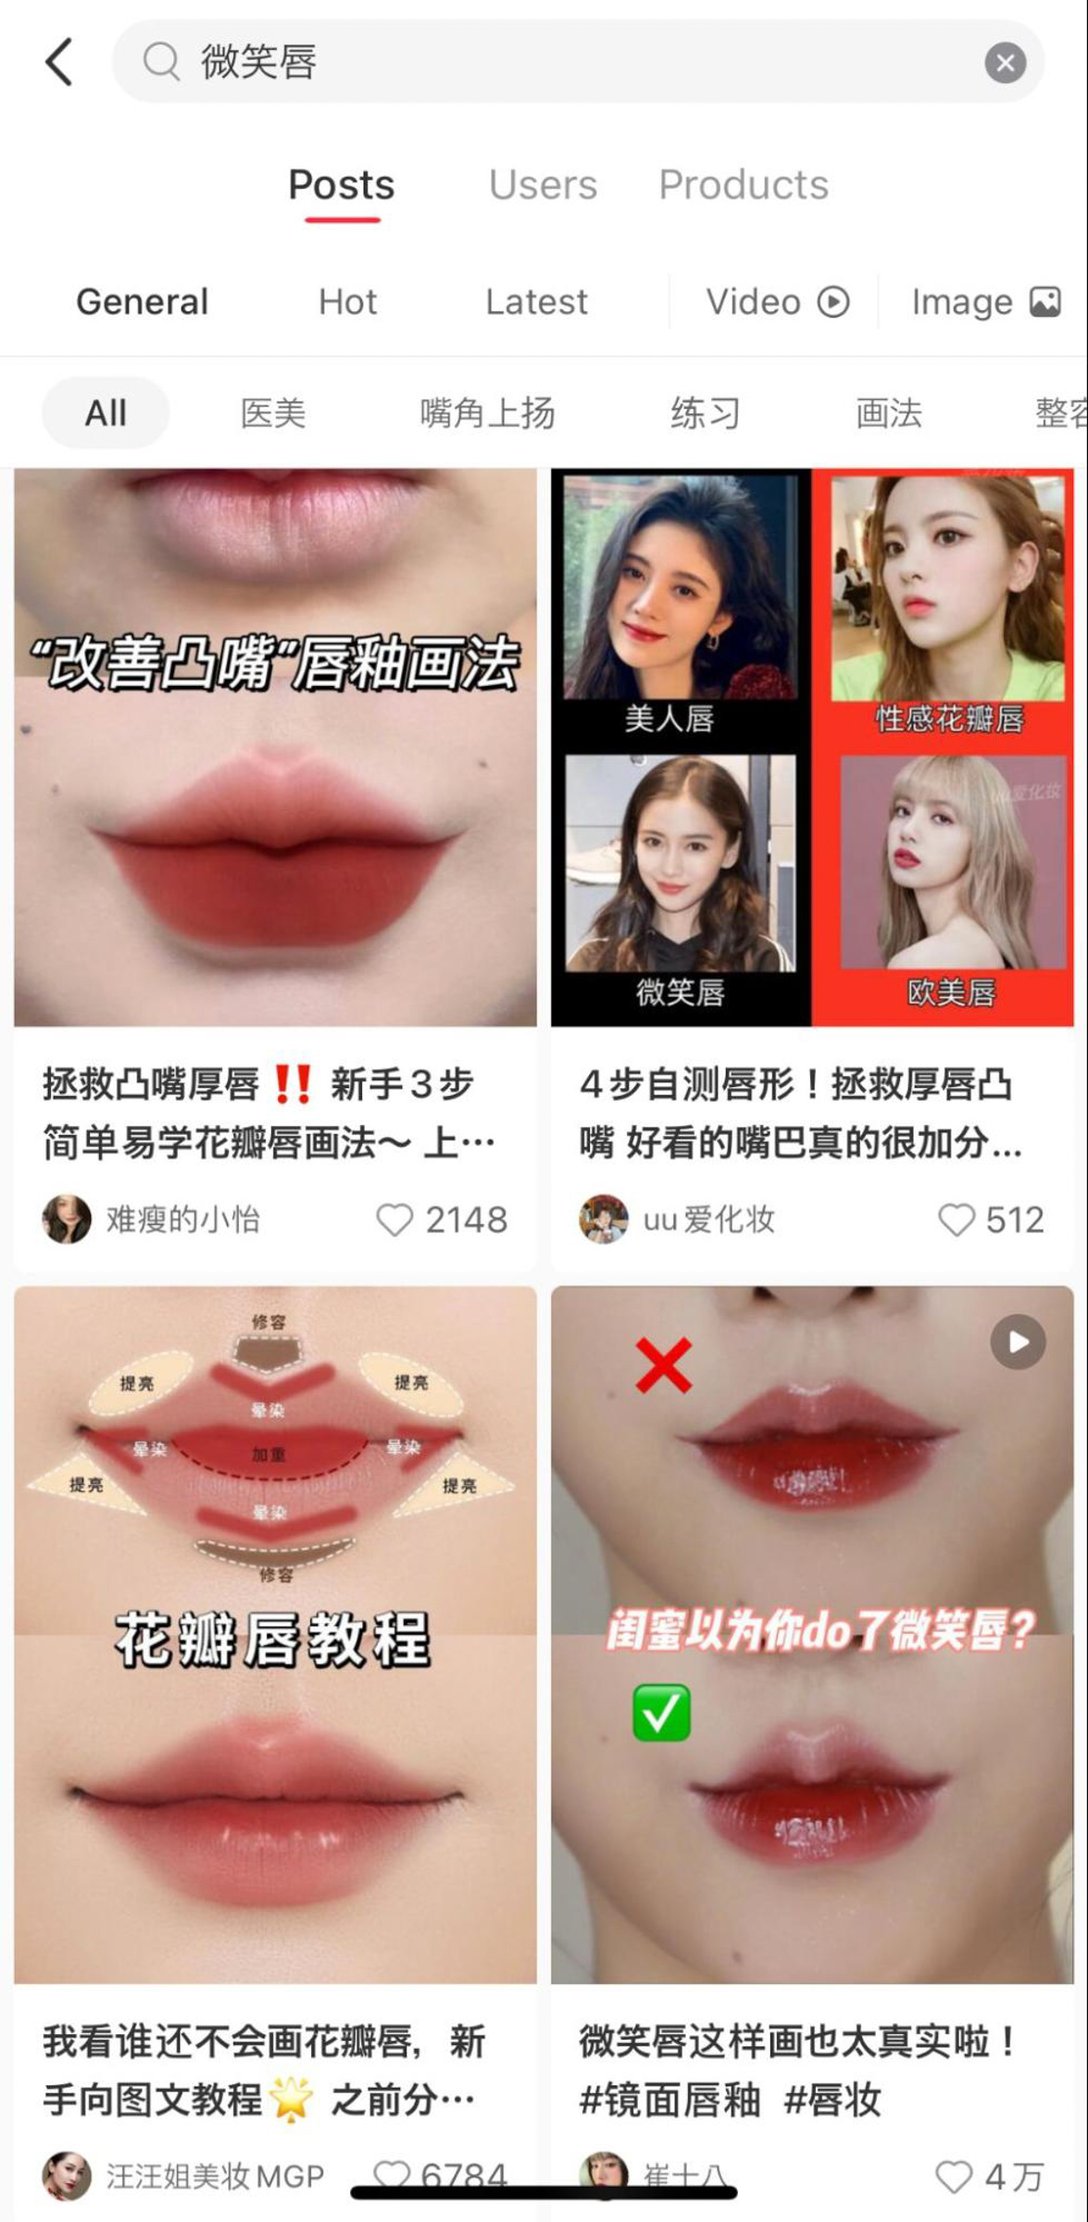 唇のメイクの画像が表示された検索画面